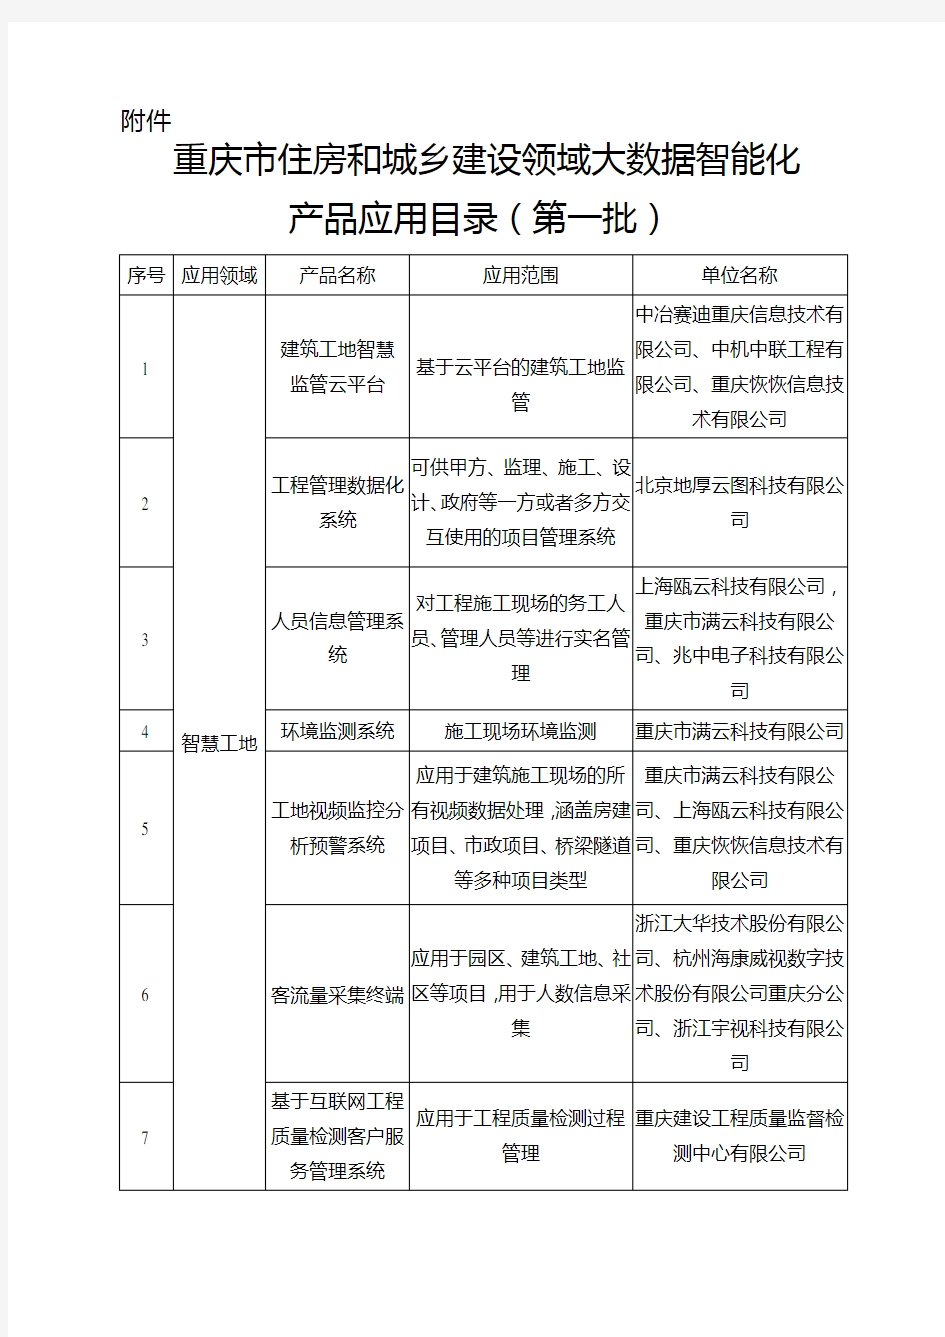 重庆城乡建设领域大数据智能化-重庆住房和城乡建设委员会